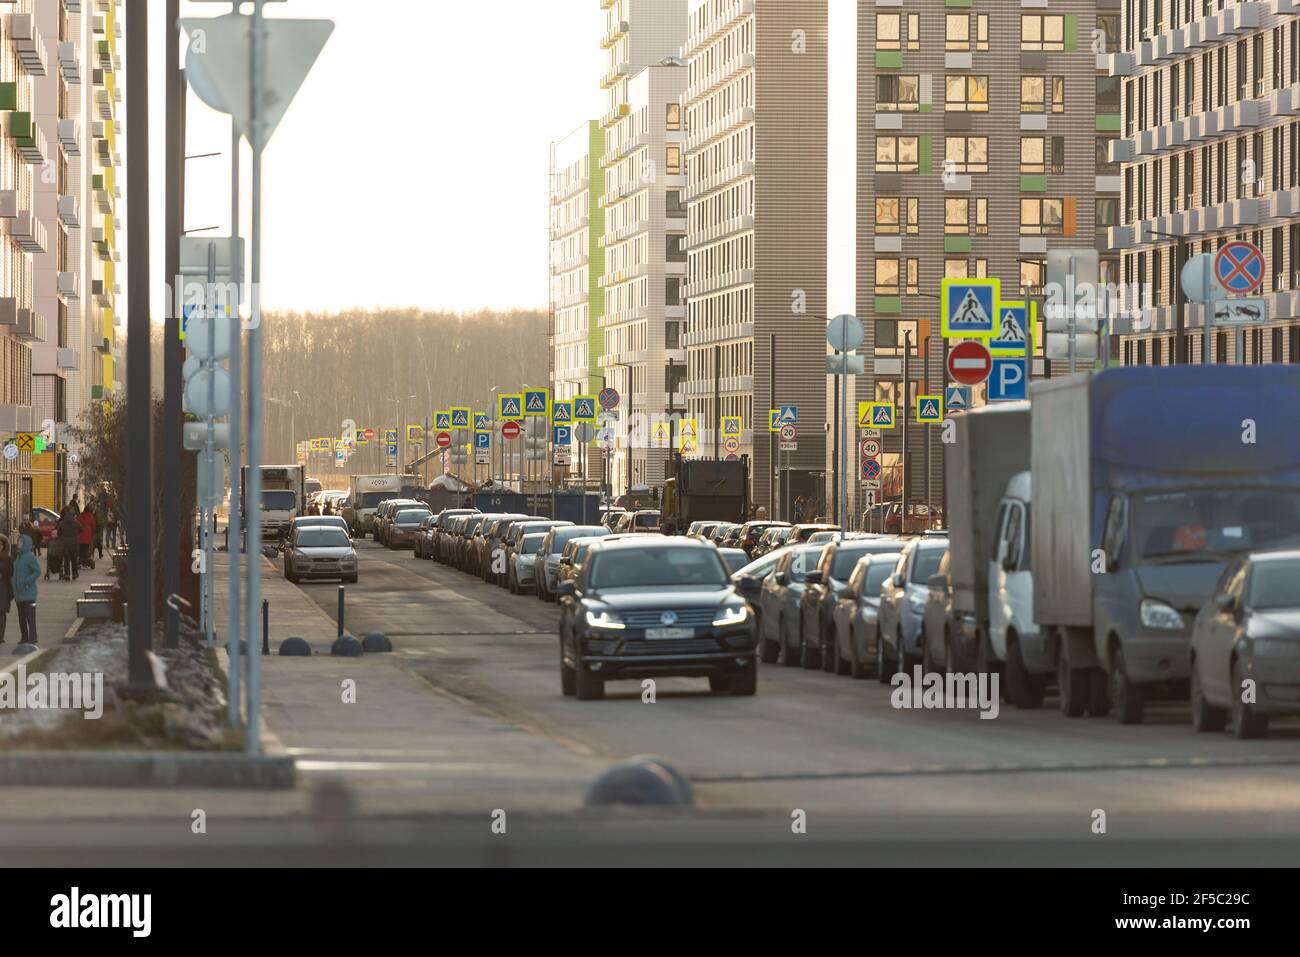 Moskau. Russland. Februar 2020. Alle verfügbaren Platz wird für das Parken durch die Installation von Hunderten von Straßenschildern verwendet. Stockfoto